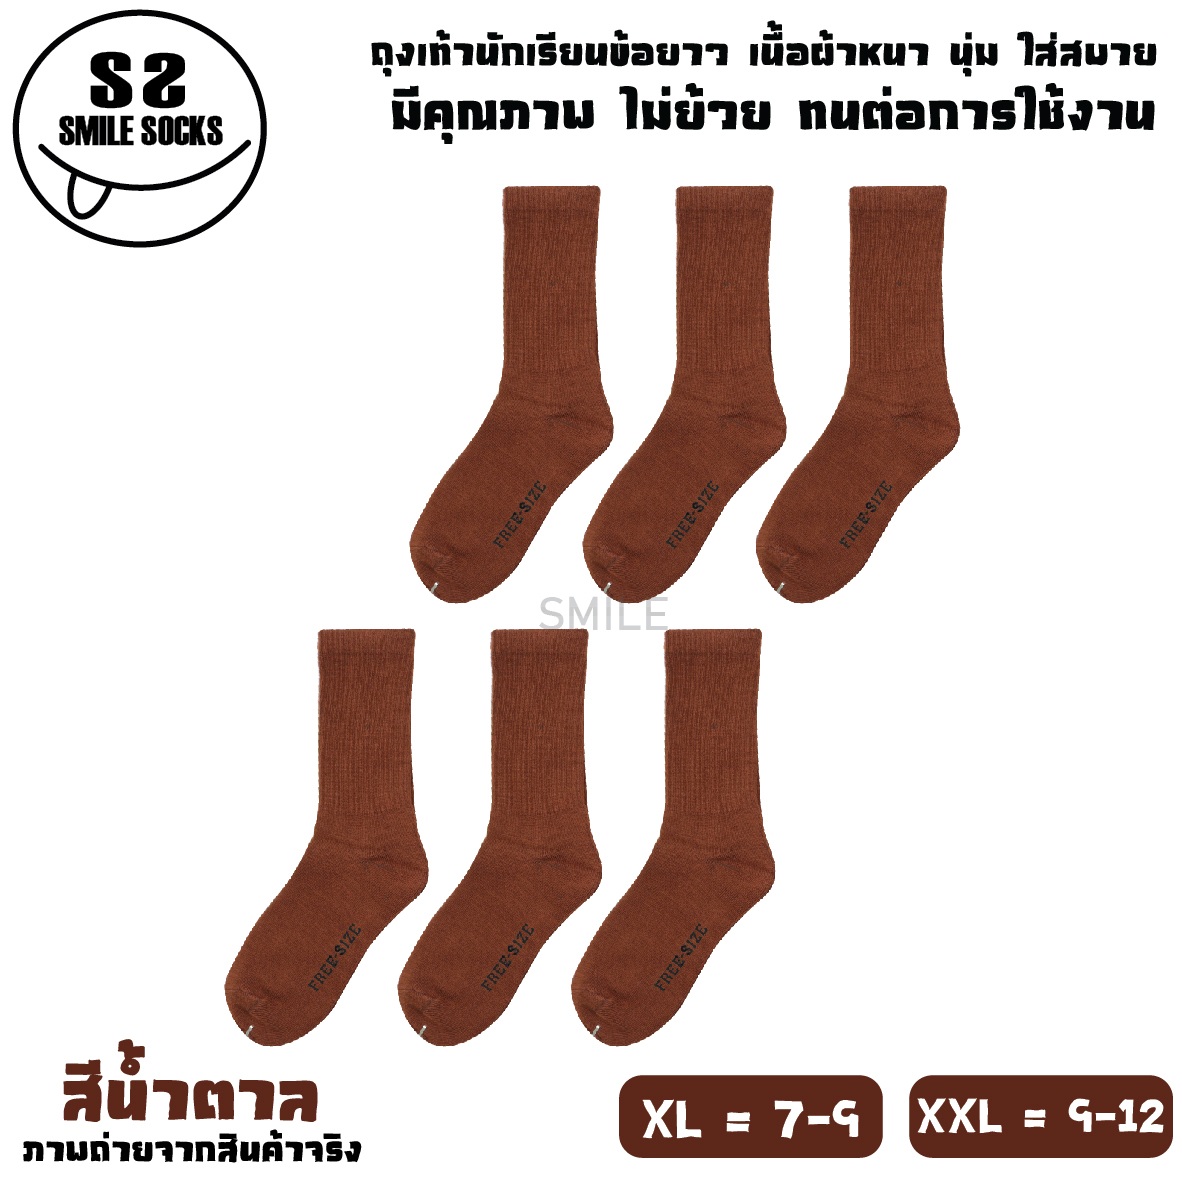 ? ถุงเท้านักเรียนไทย ข้อยาว สีขาวพื้นเทา ⚽ สีน้ำตาล ? เนื้อผ้าหนา ? ไม่ย้วย ? ทน ? ถุงเท้าคุณภาพดี ?